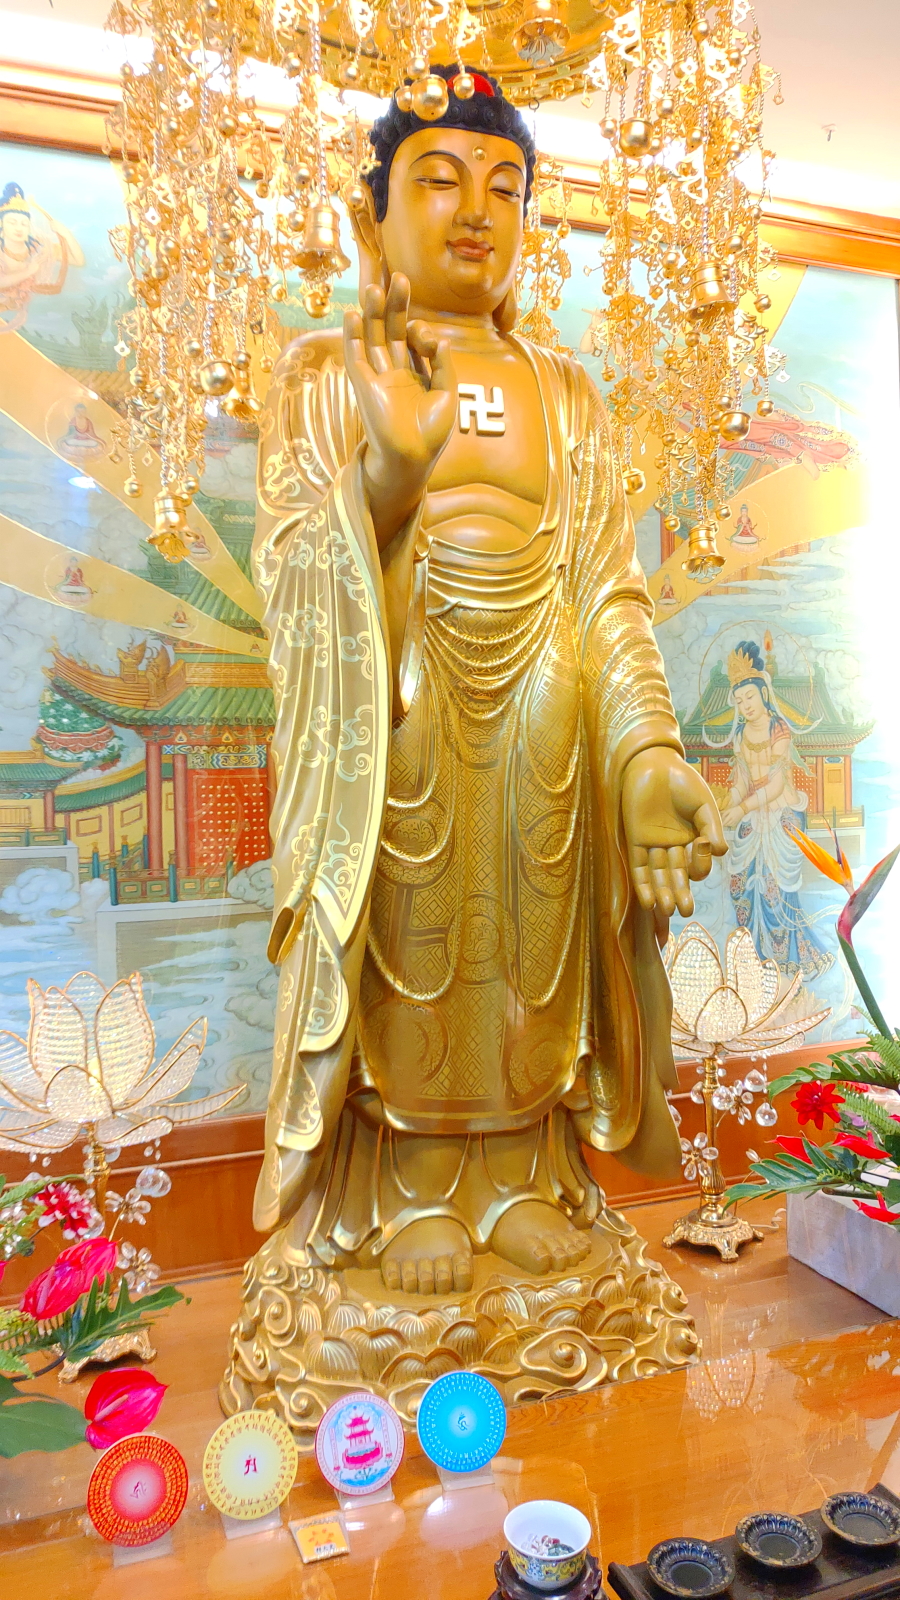 Amita Buddha 阿彌陀佛